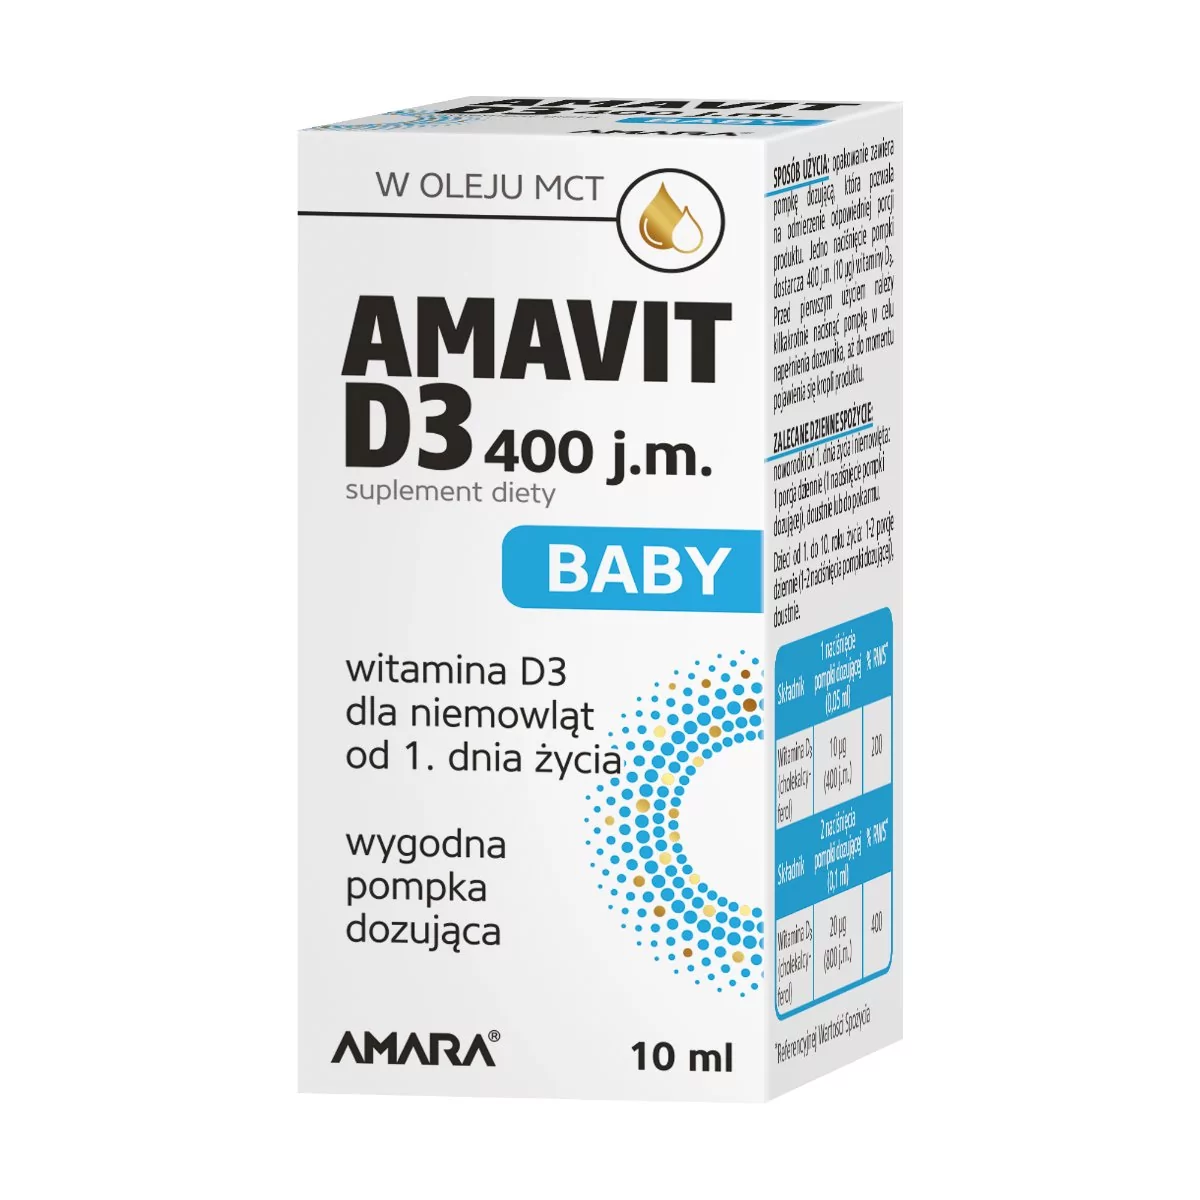 Amavit D3 Baby 400 j.m. krople 10 ml